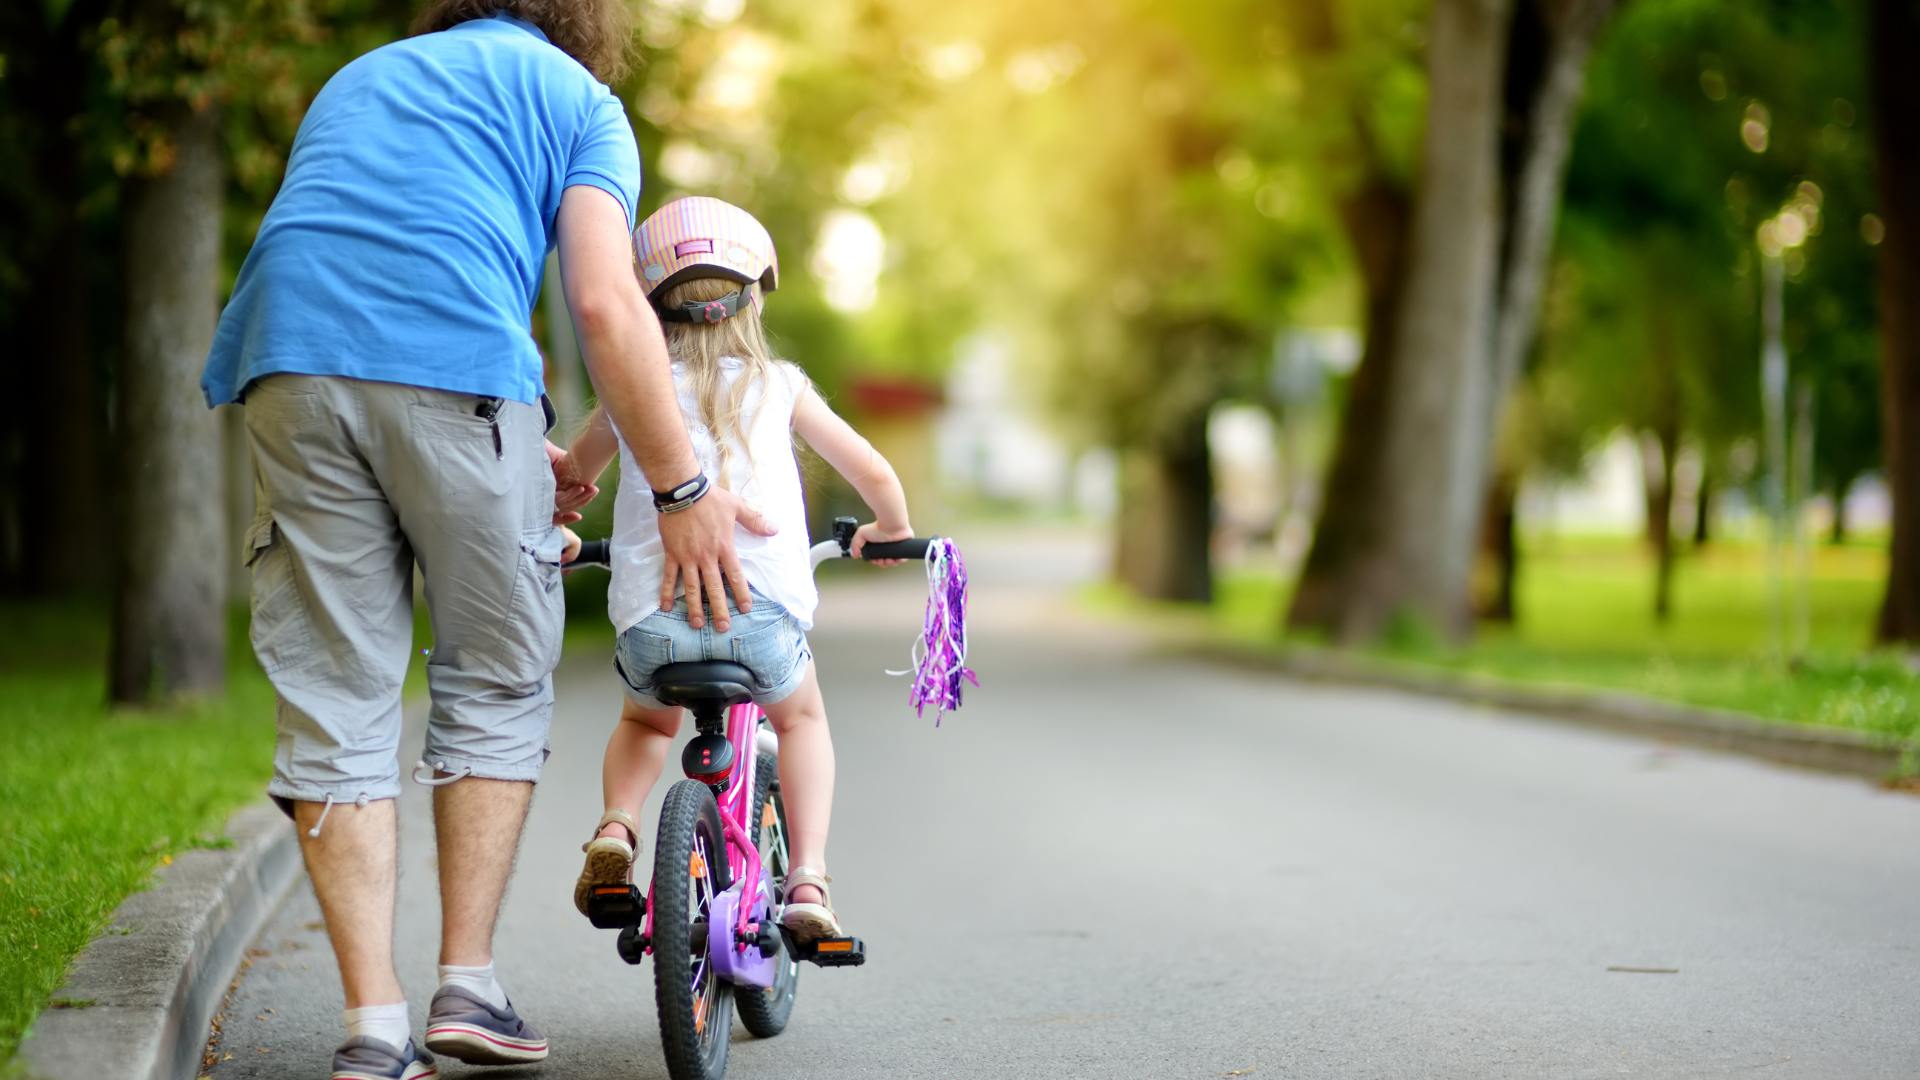 Sonhar com Criança Andando de Bicicleta: Qual é o Significado?